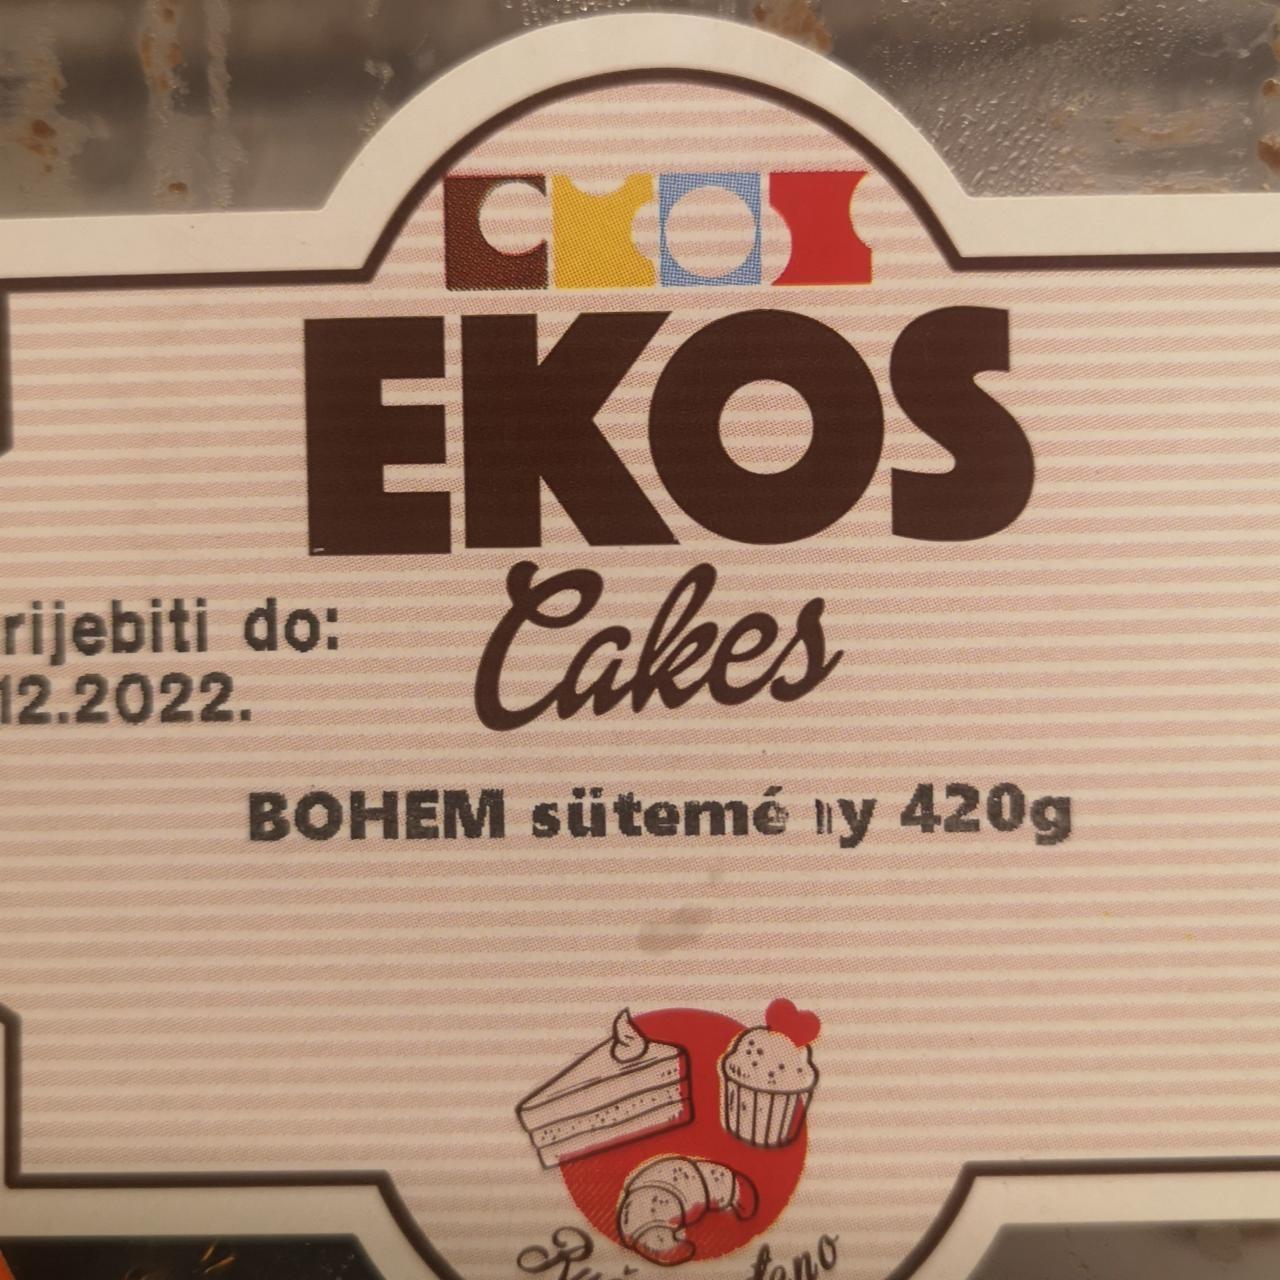 Képek - Bohem sütemény Ekos